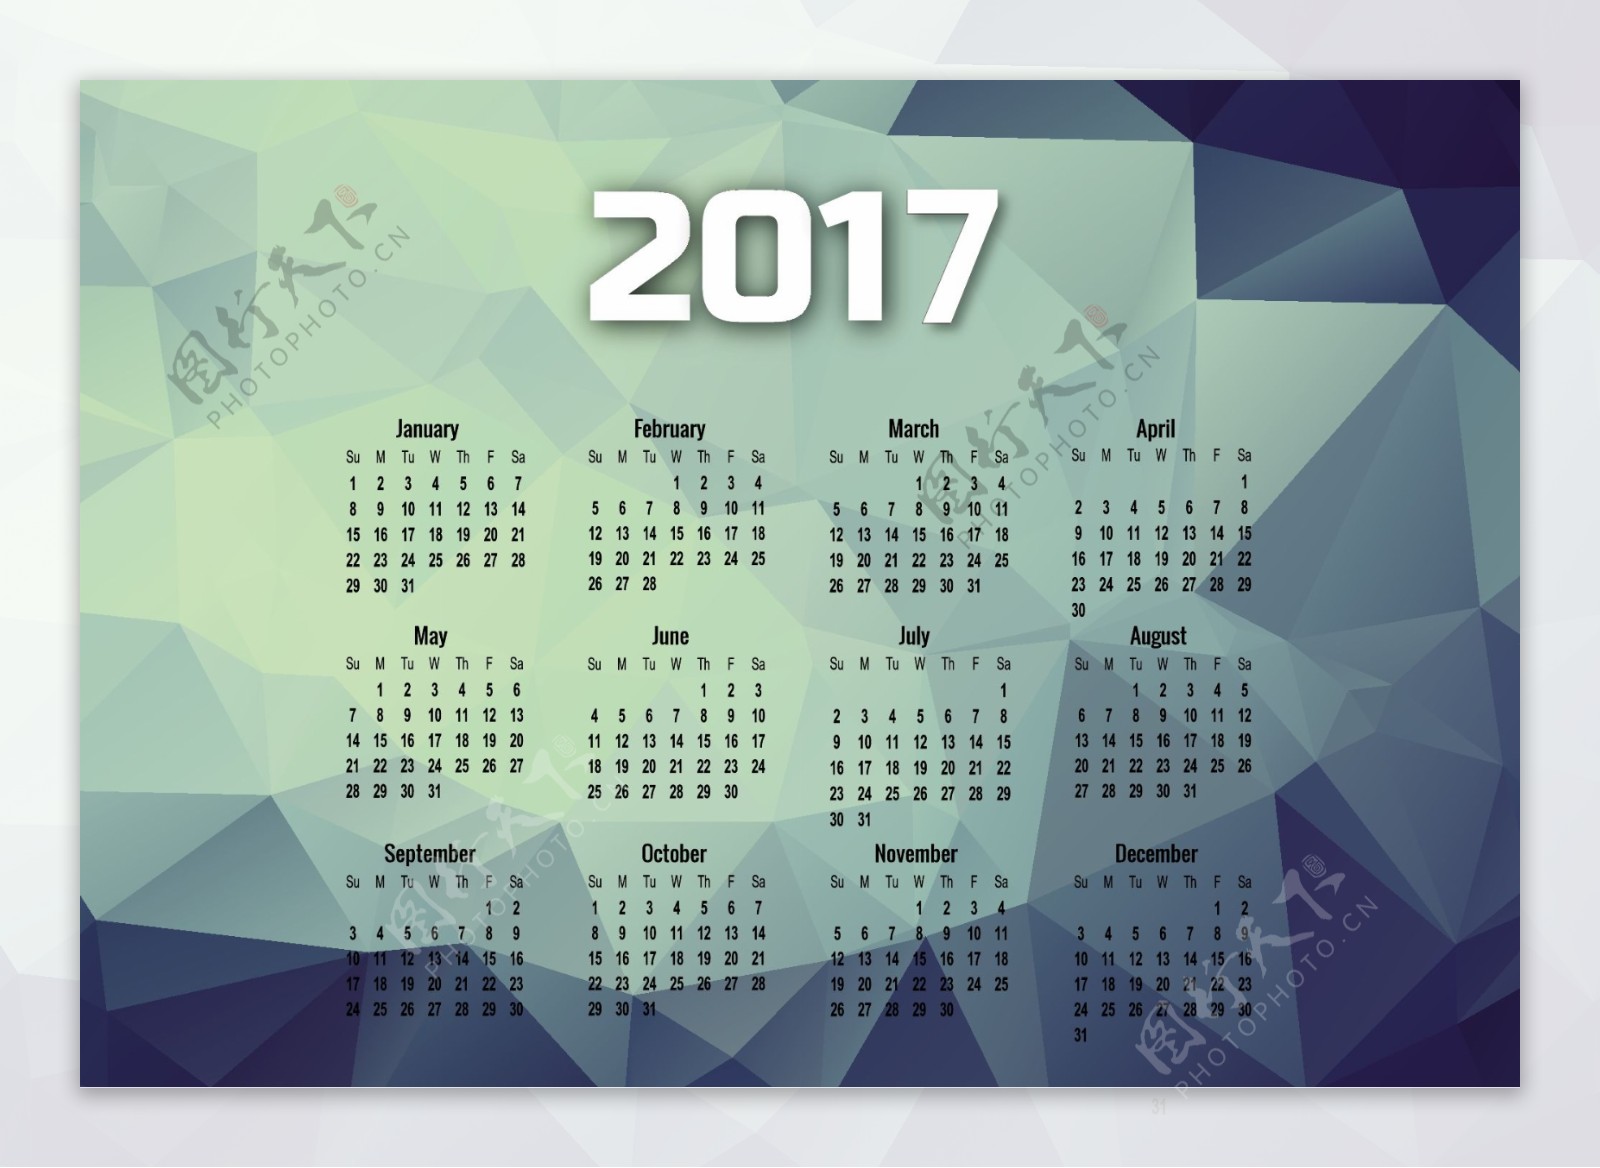 2017个月的日历